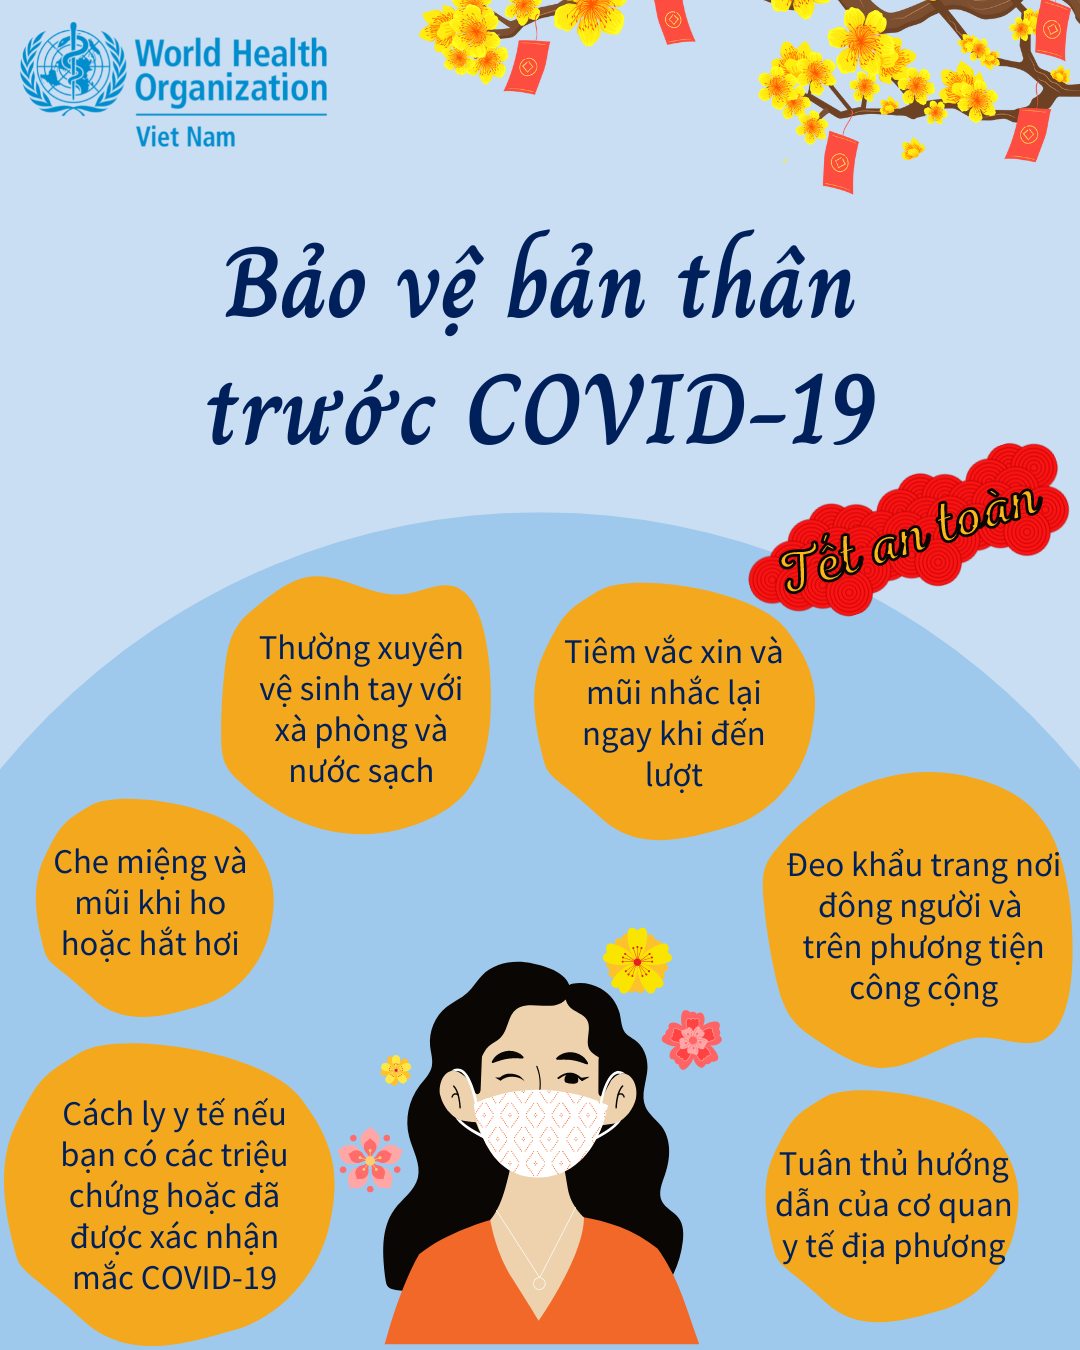 [Infographic] Tết an toàn, bảo vệ bản thân trước COVID-19 - Ảnh 1.